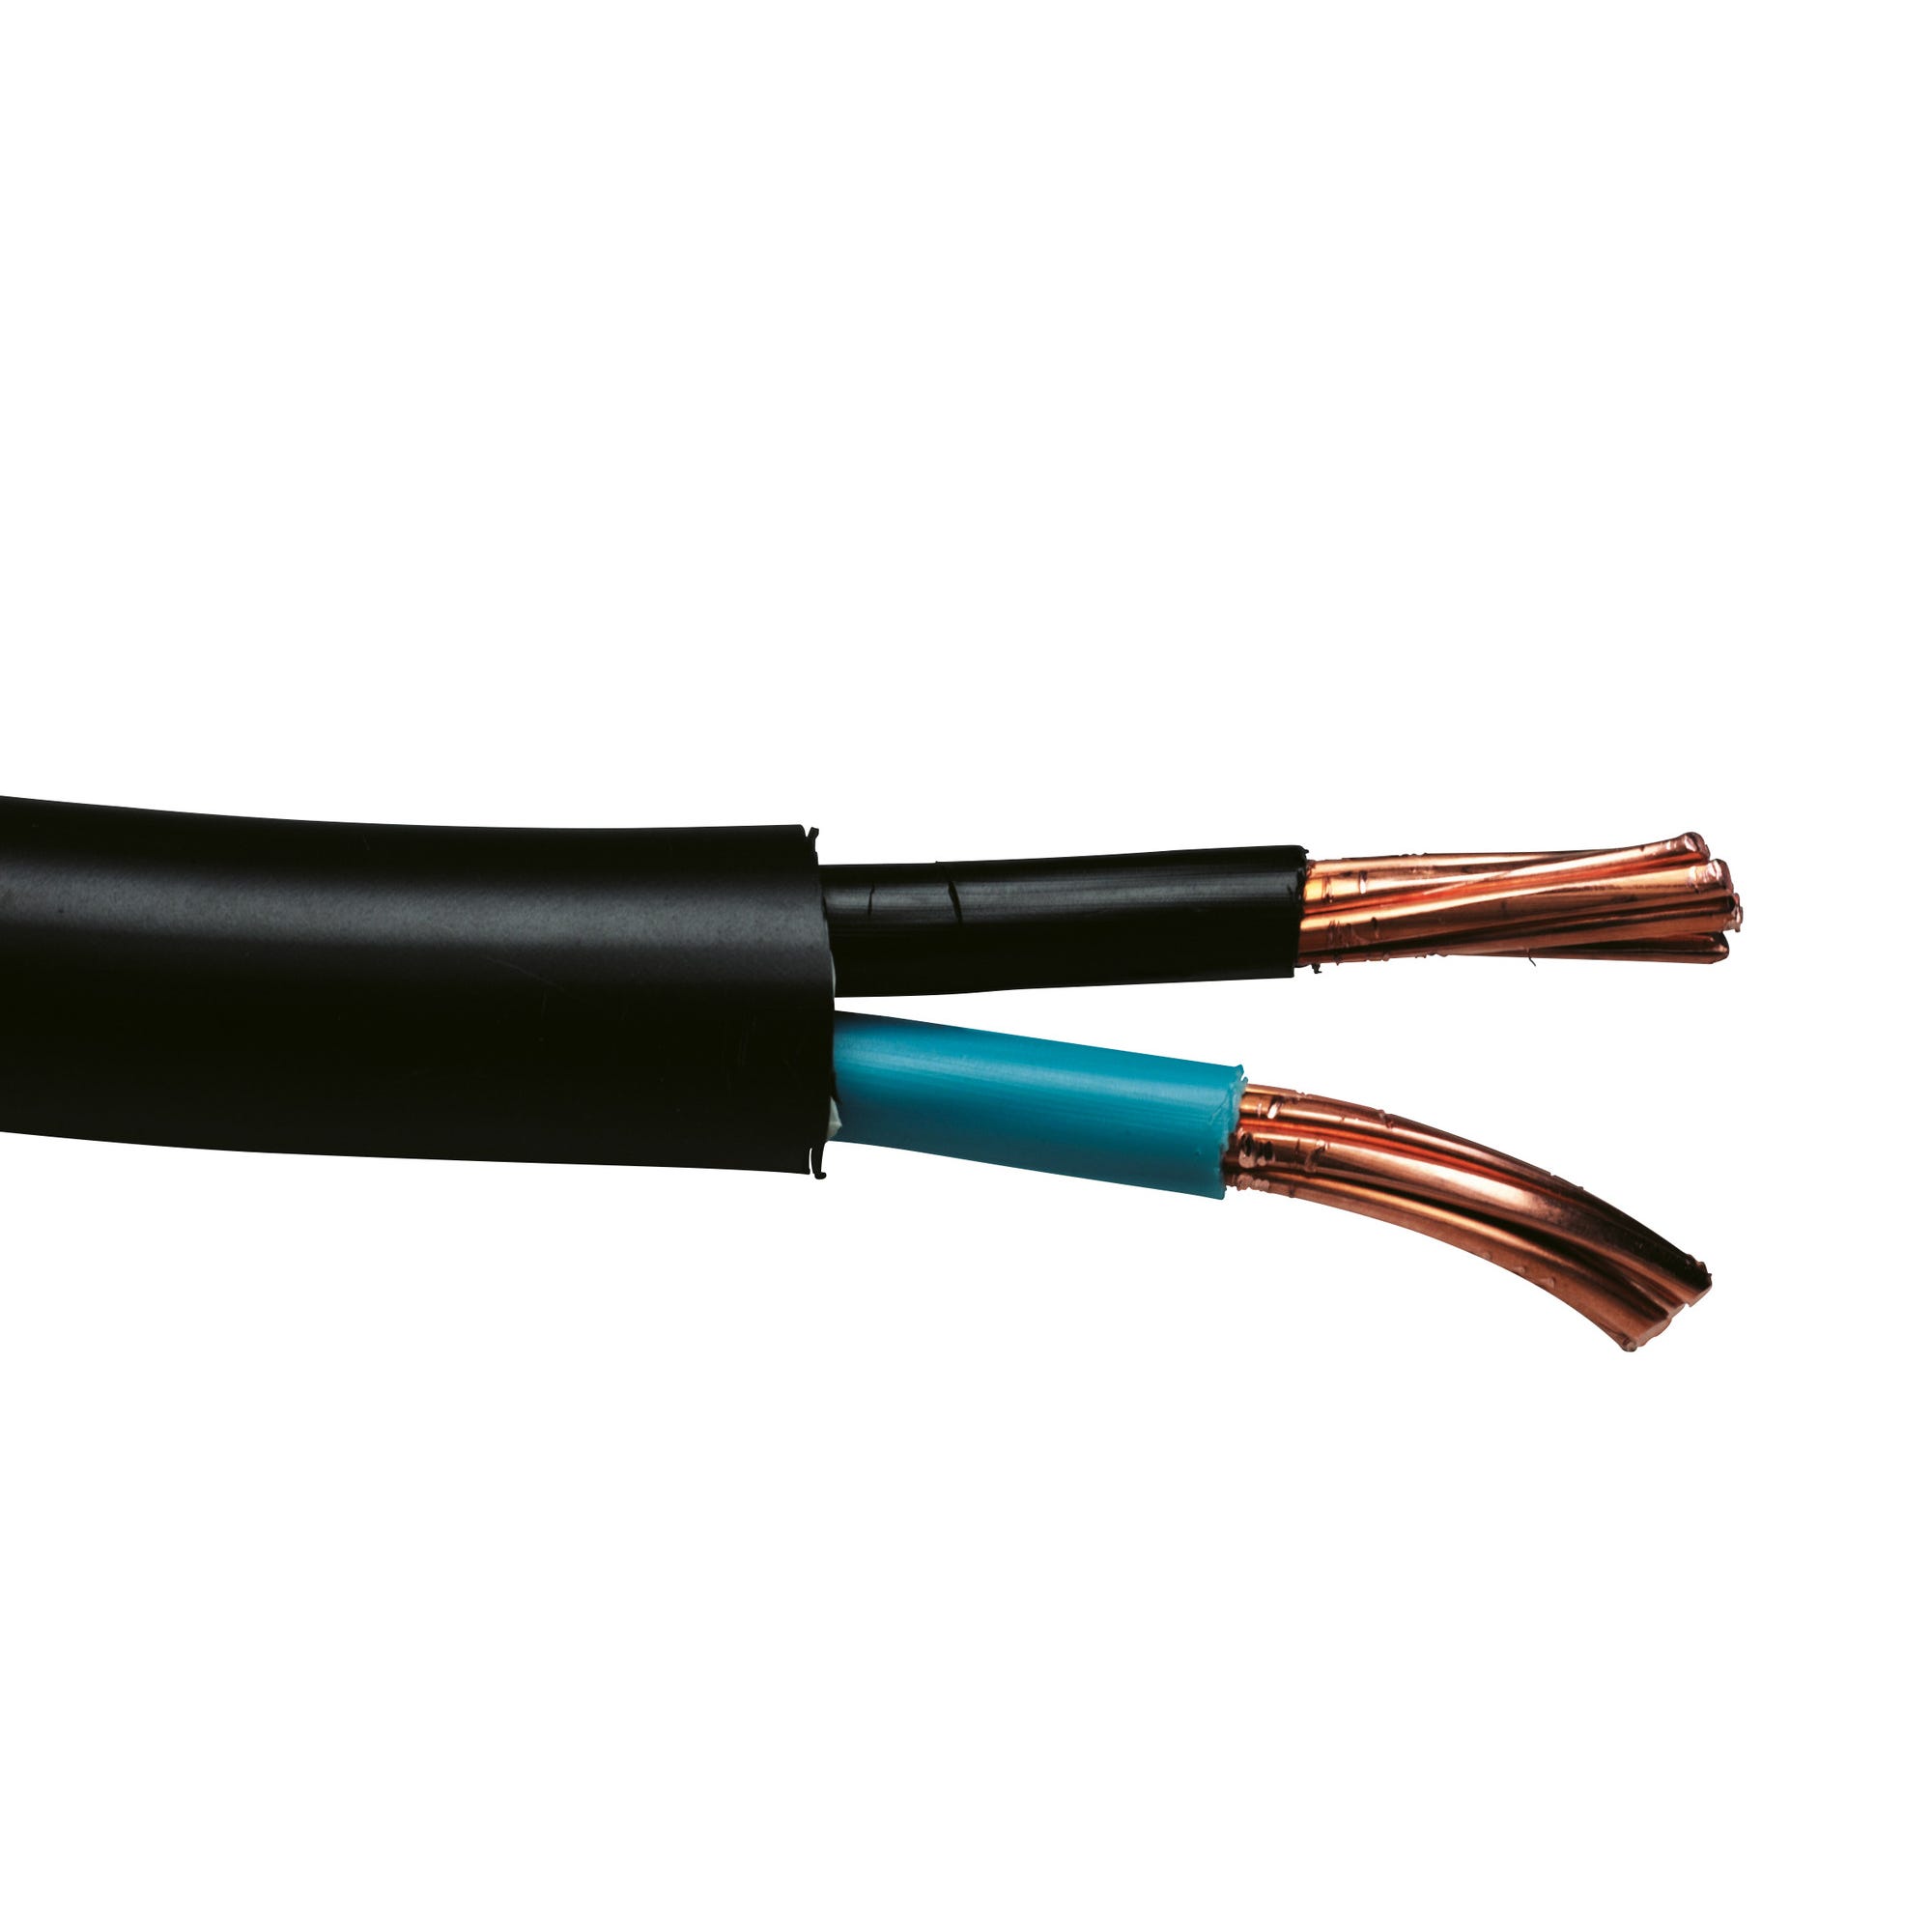 Cable électrique R2V 3G 6 mm² 50 m - NEXANS FRANCE  1